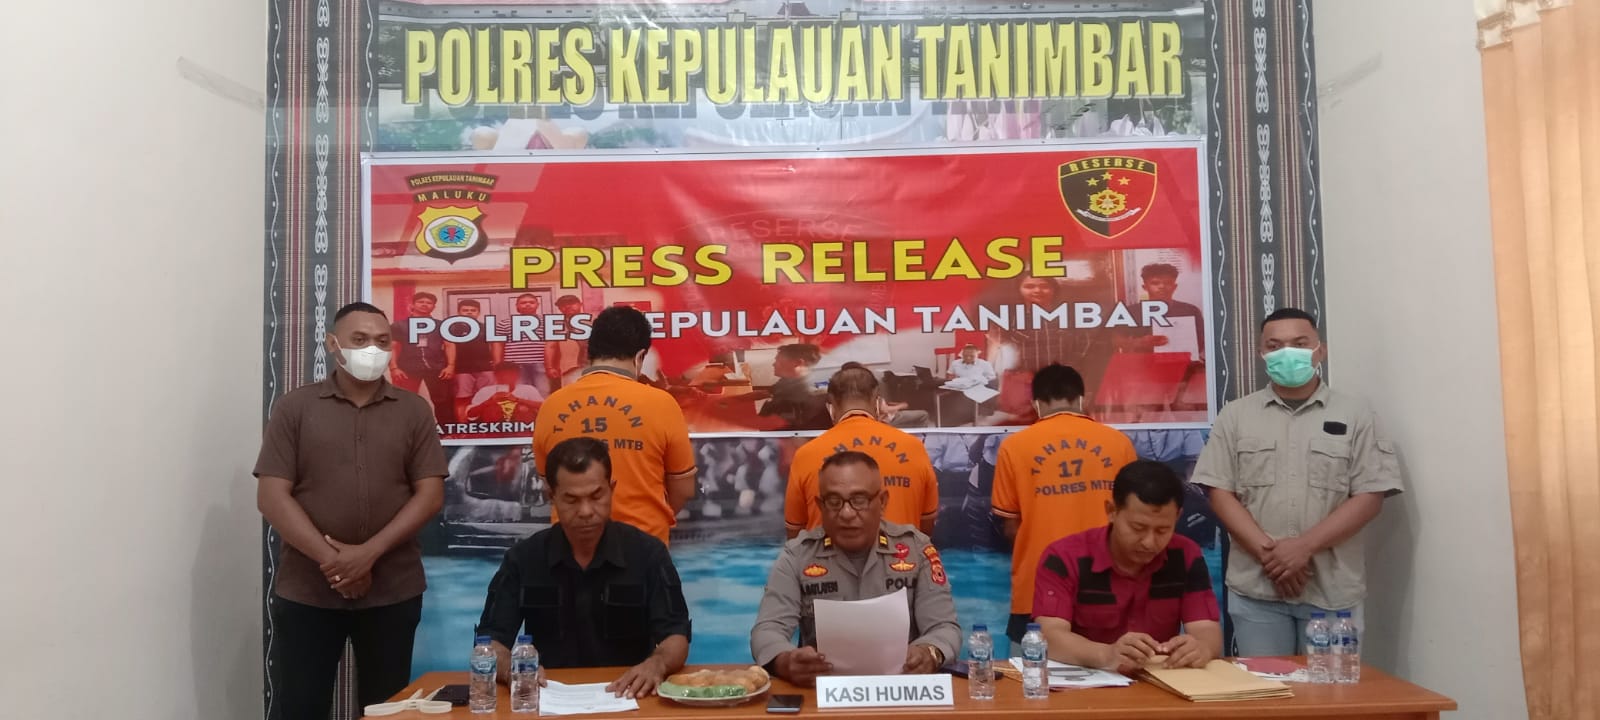 Polres Kepulauan Tanimbar menggelar keterangan tentang perdagangan manusia di Mapolres Kepulauan Tanimbar, Saumlaki. -f:Yanto-